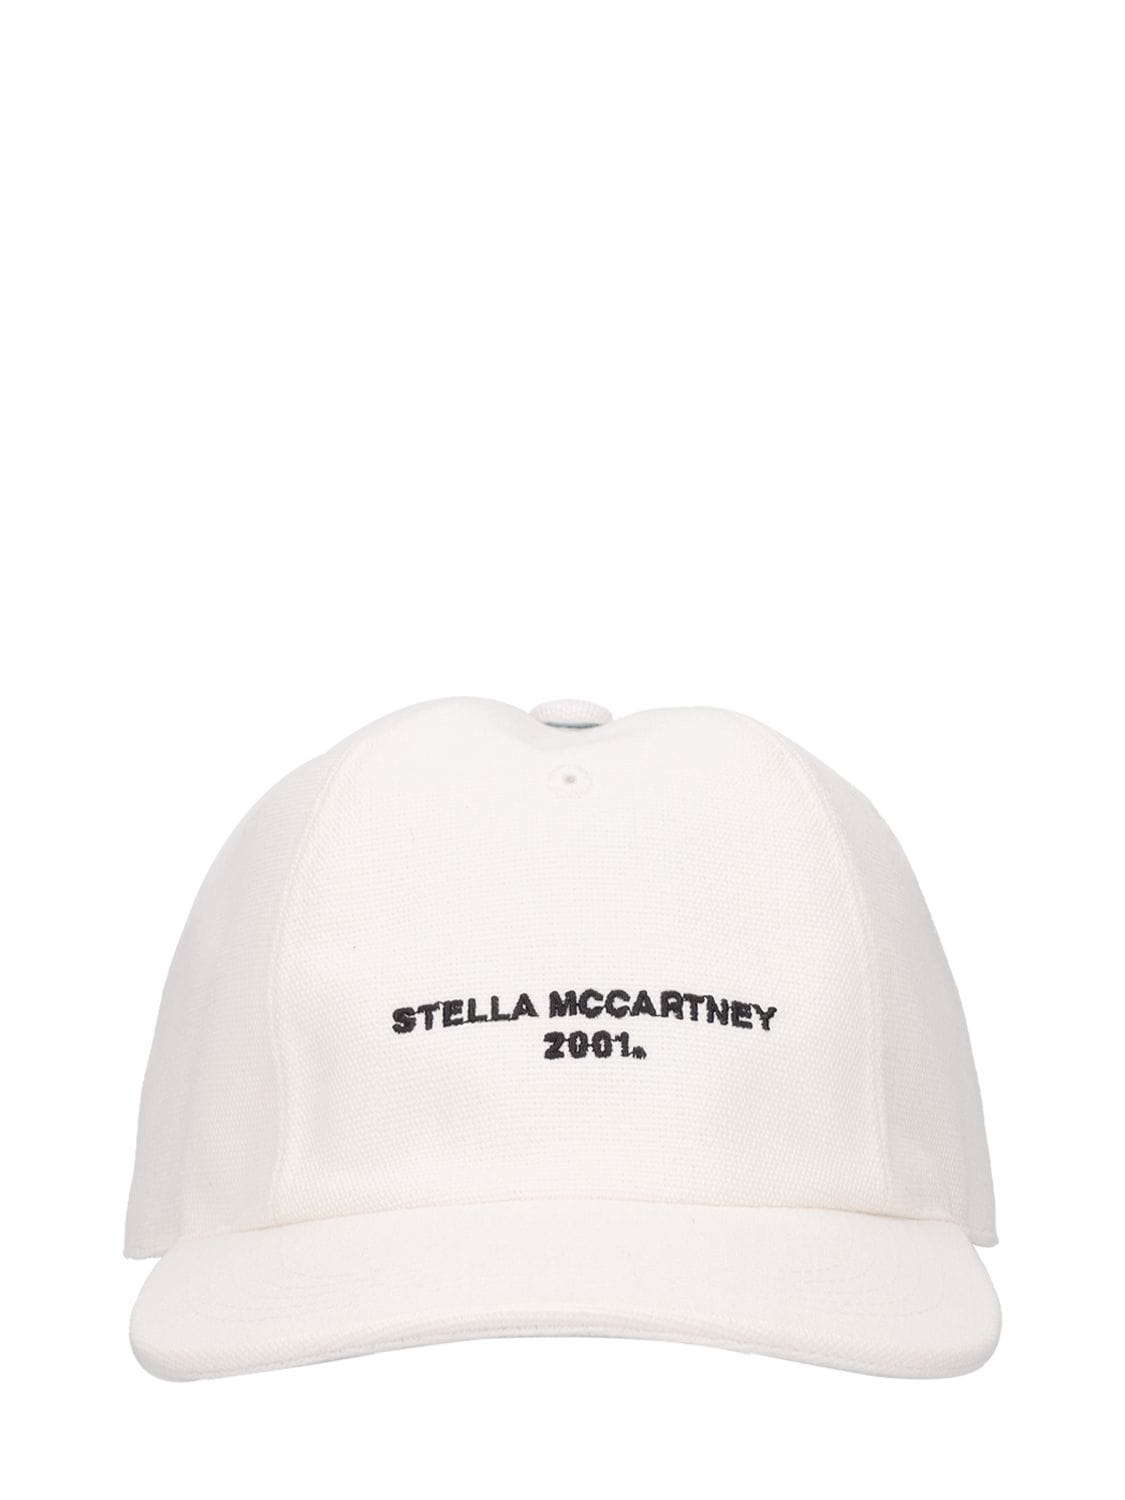 Casquette S Wave Stella McCartney Femme Accessoires Bonnets & Chapeaux Casquettes 